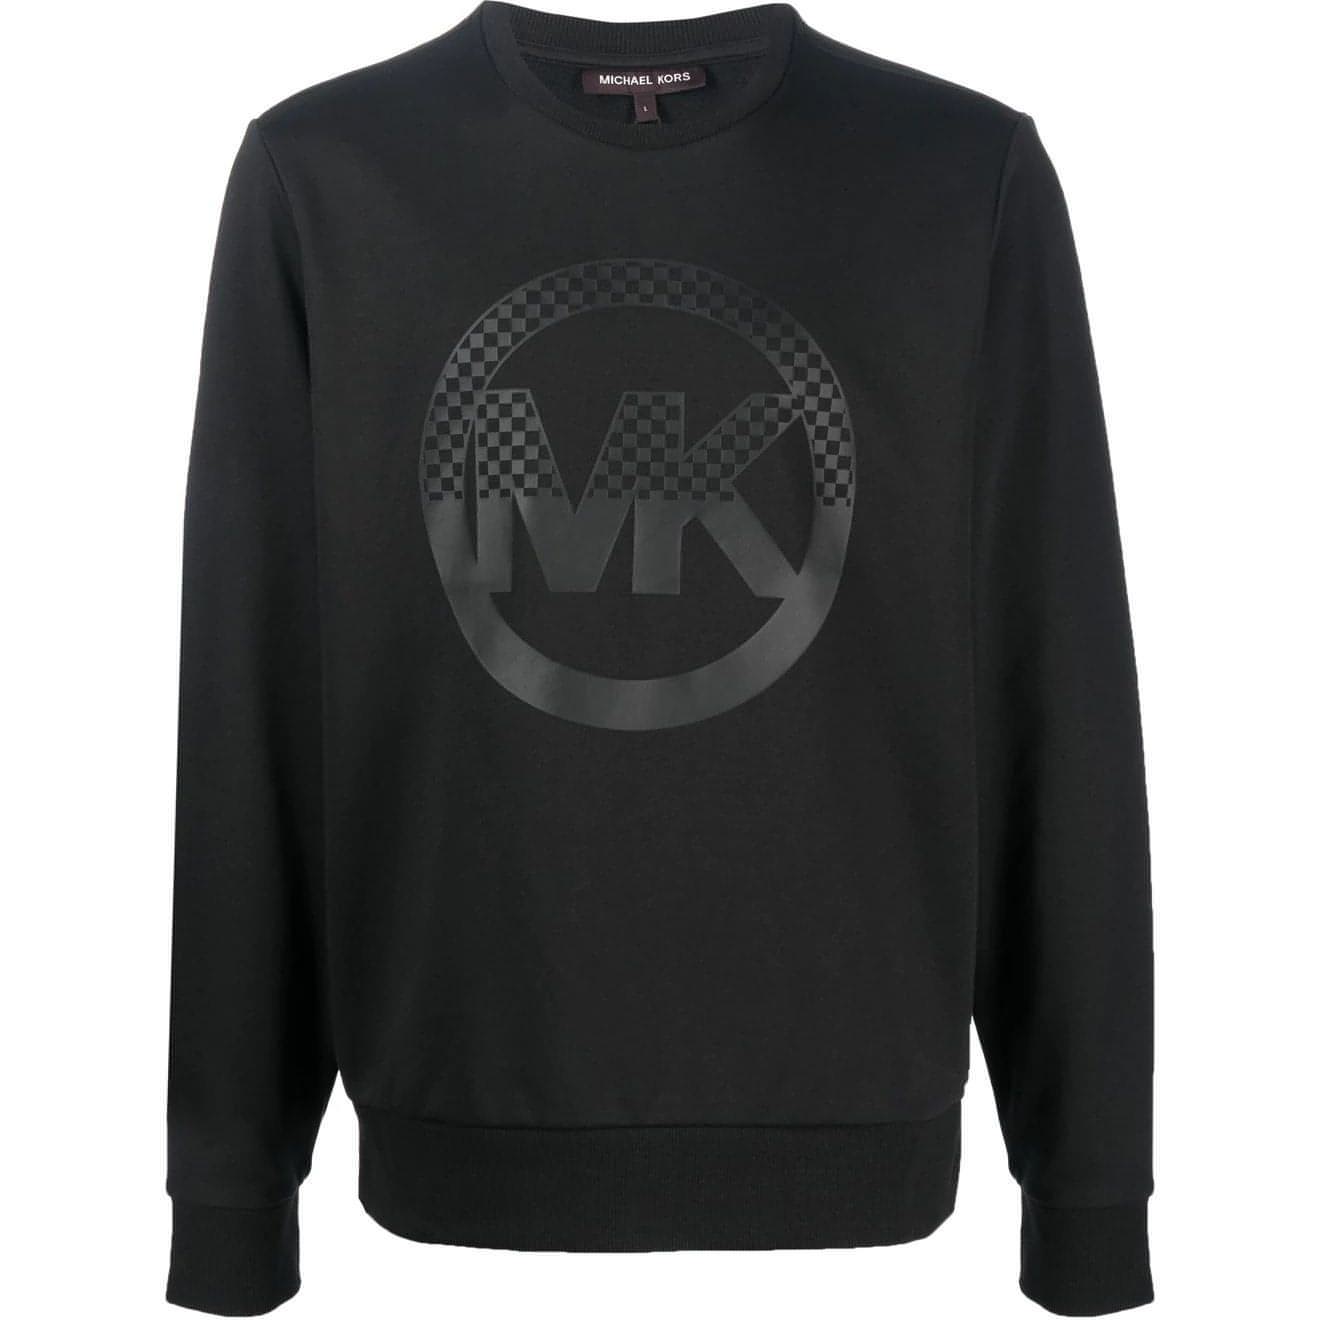 MICHAEL KORS vyriškas juodas megztinis Checker charm crew sweater